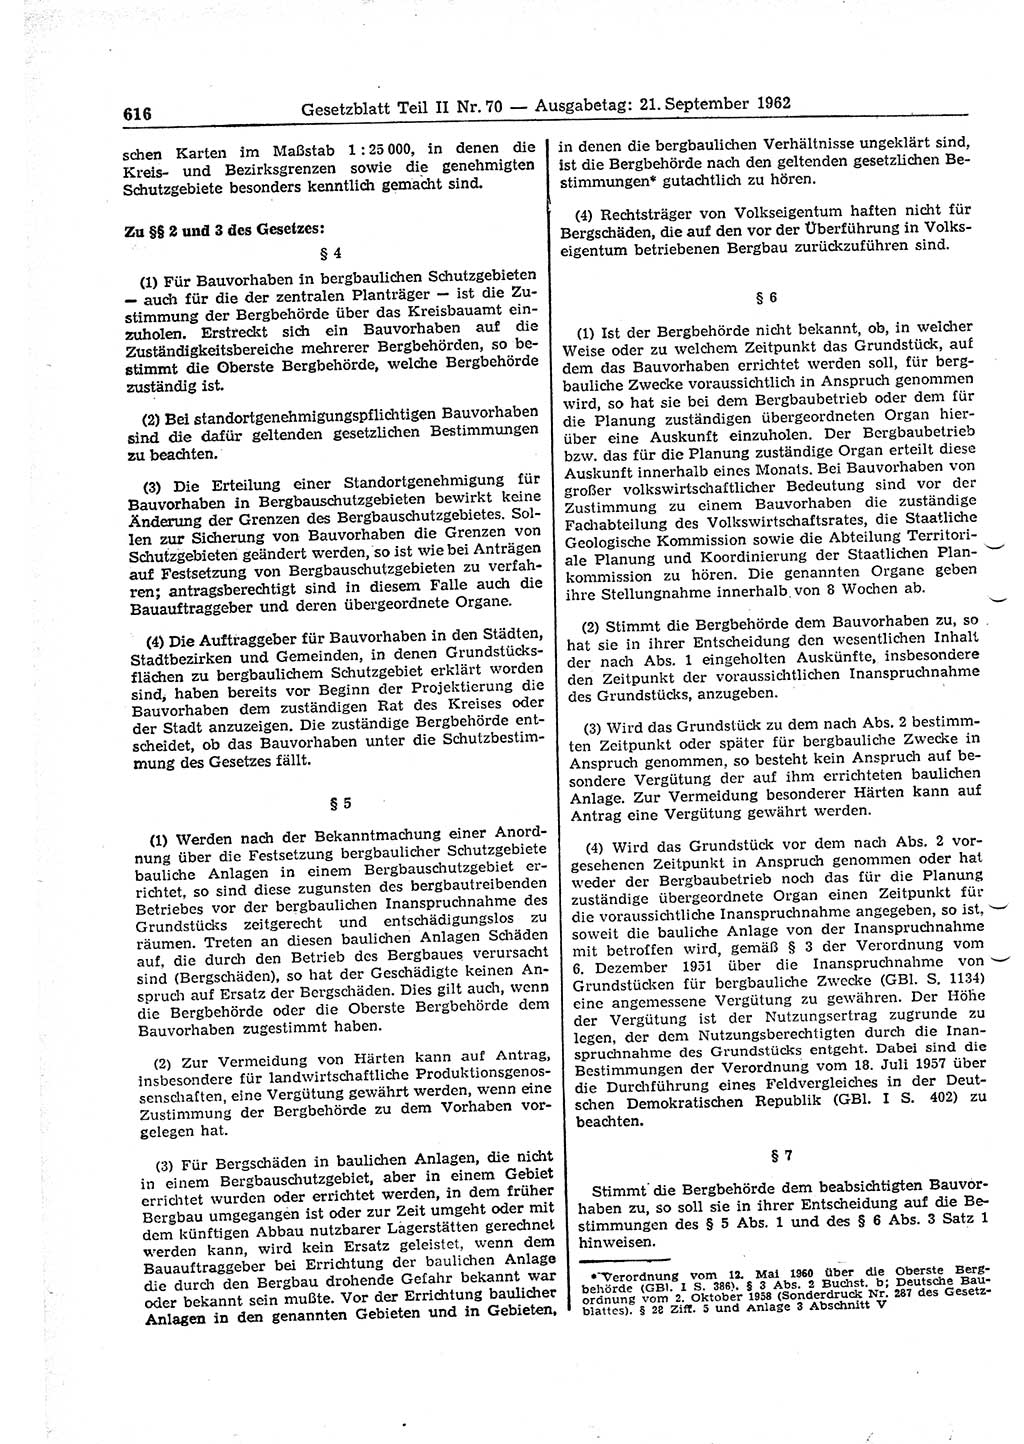 Gesetzblatt (GBl.) der Deutschen Demokratischen Republik (DDR) Teil ⅠⅠ 1962, Seite 616 (GBl. DDR ⅠⅠ 1962, S. 616)